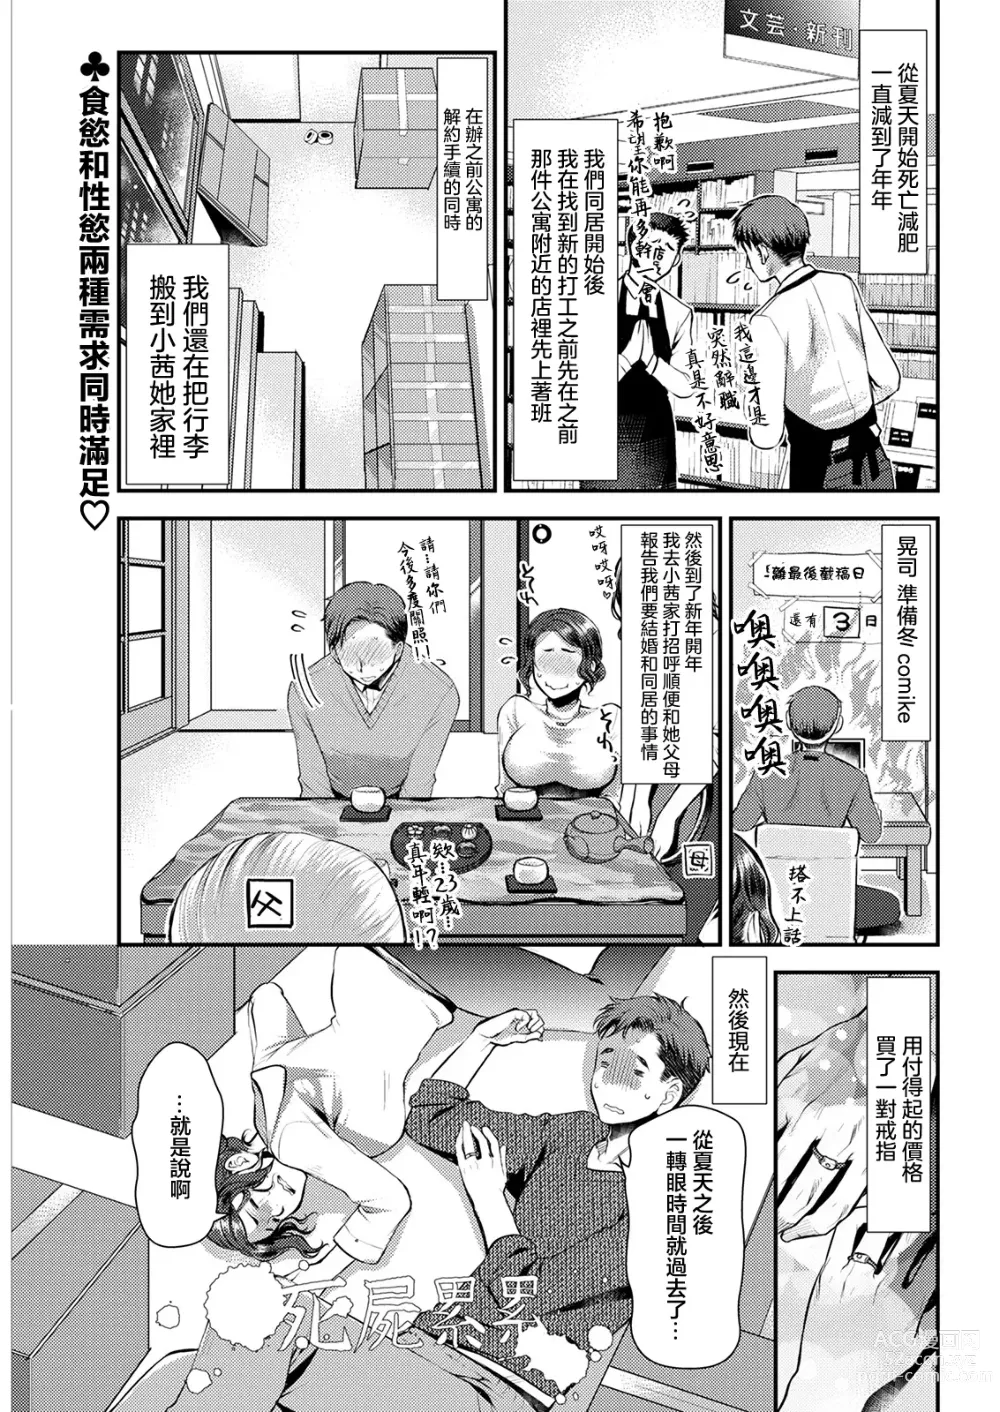 Page 1 of manga Sex x Meshi #5 Tomato Nabe